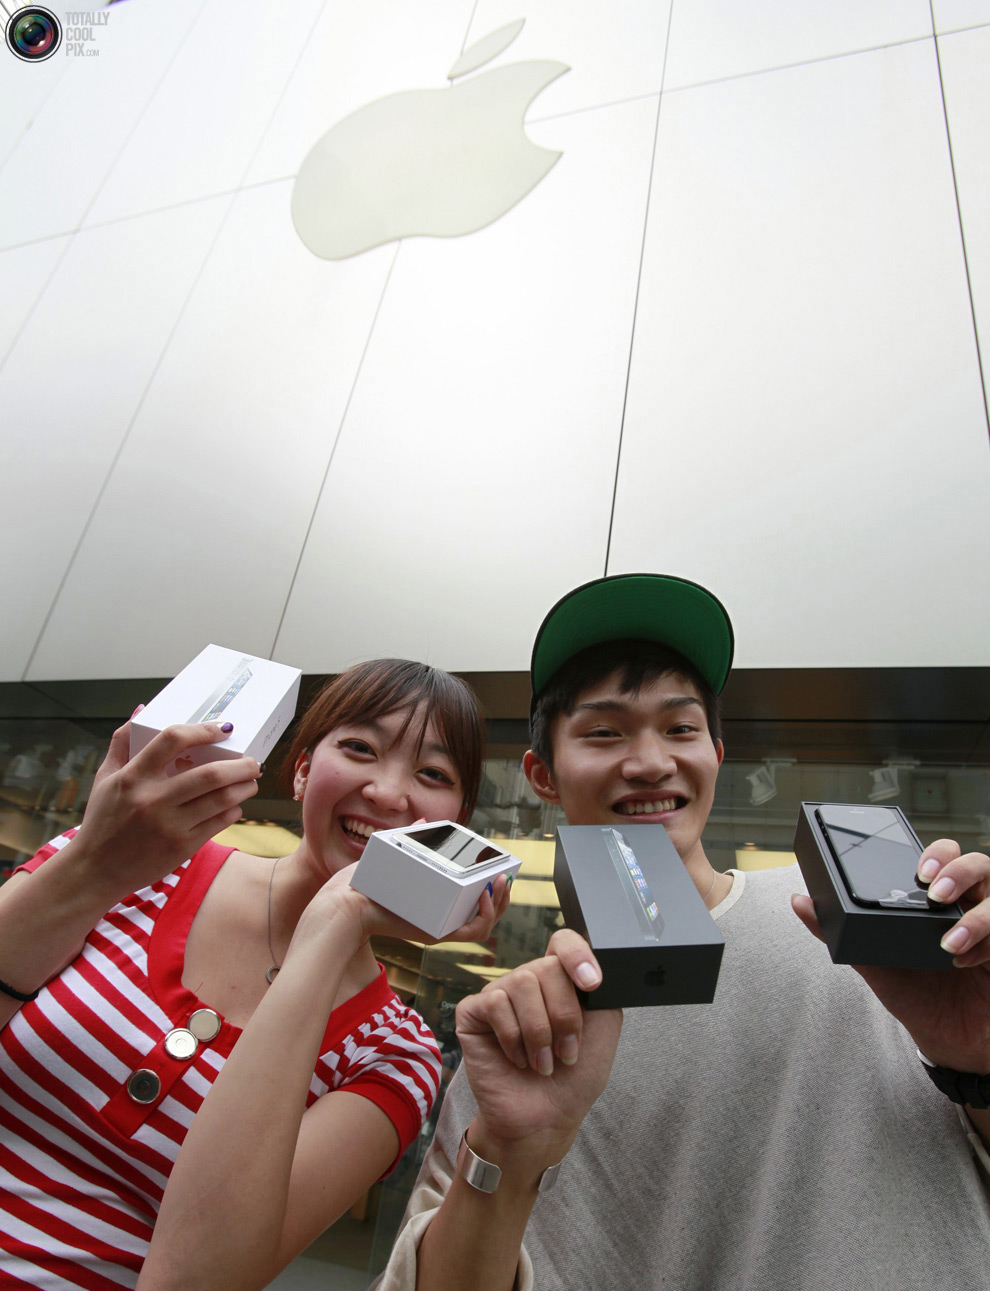 iphone28 Сегодня открылись продажи iPhone5